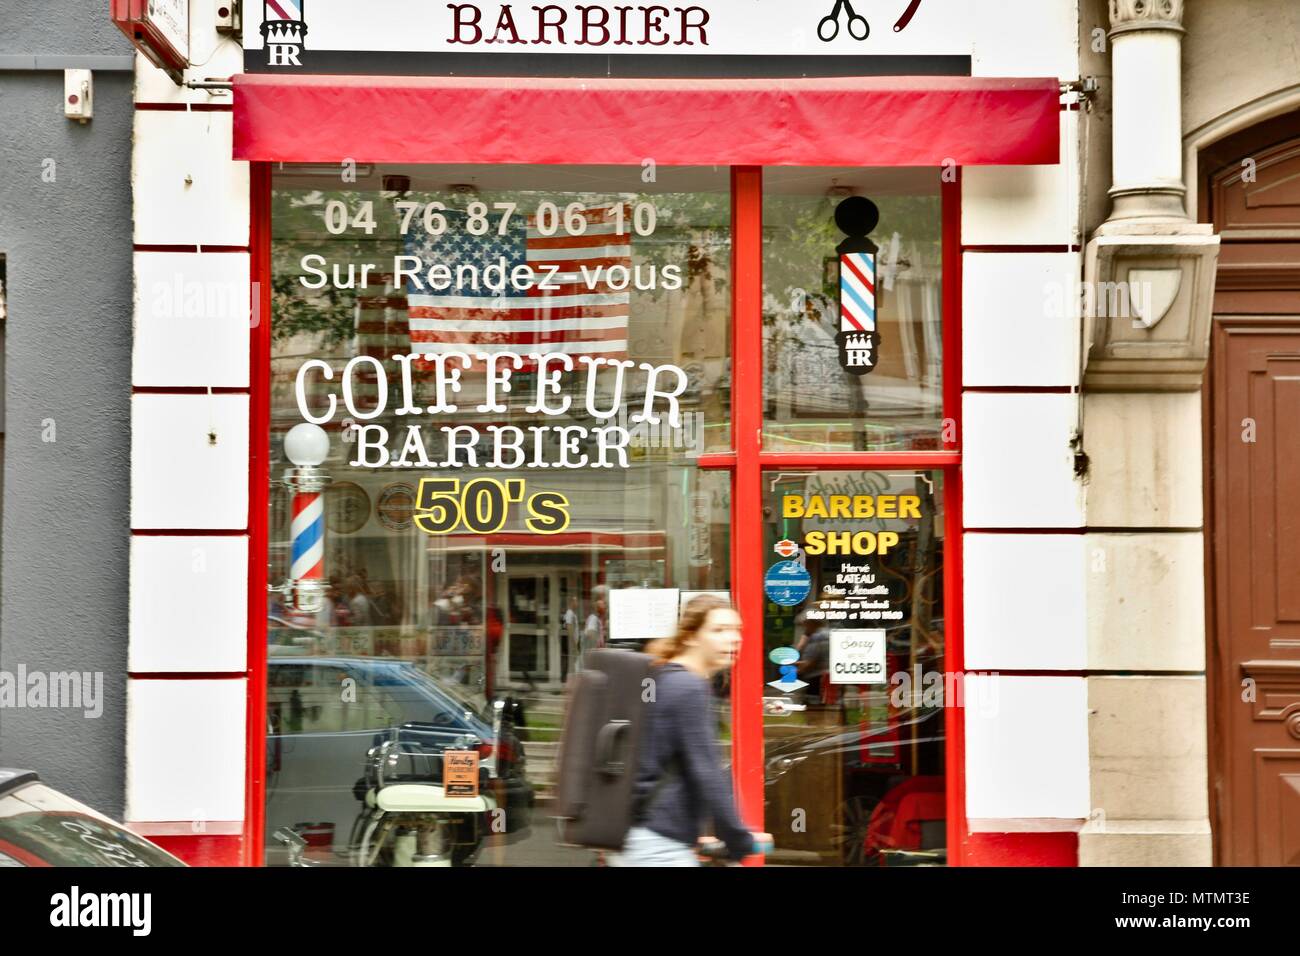 Salon de coiffure avec un Américain, USA, d'une décoration et d'un vieux signe. Renouvellement des barbiers en France grâce à une clientèle de personnes branchées. Grenoble, Isère Banque D'Images